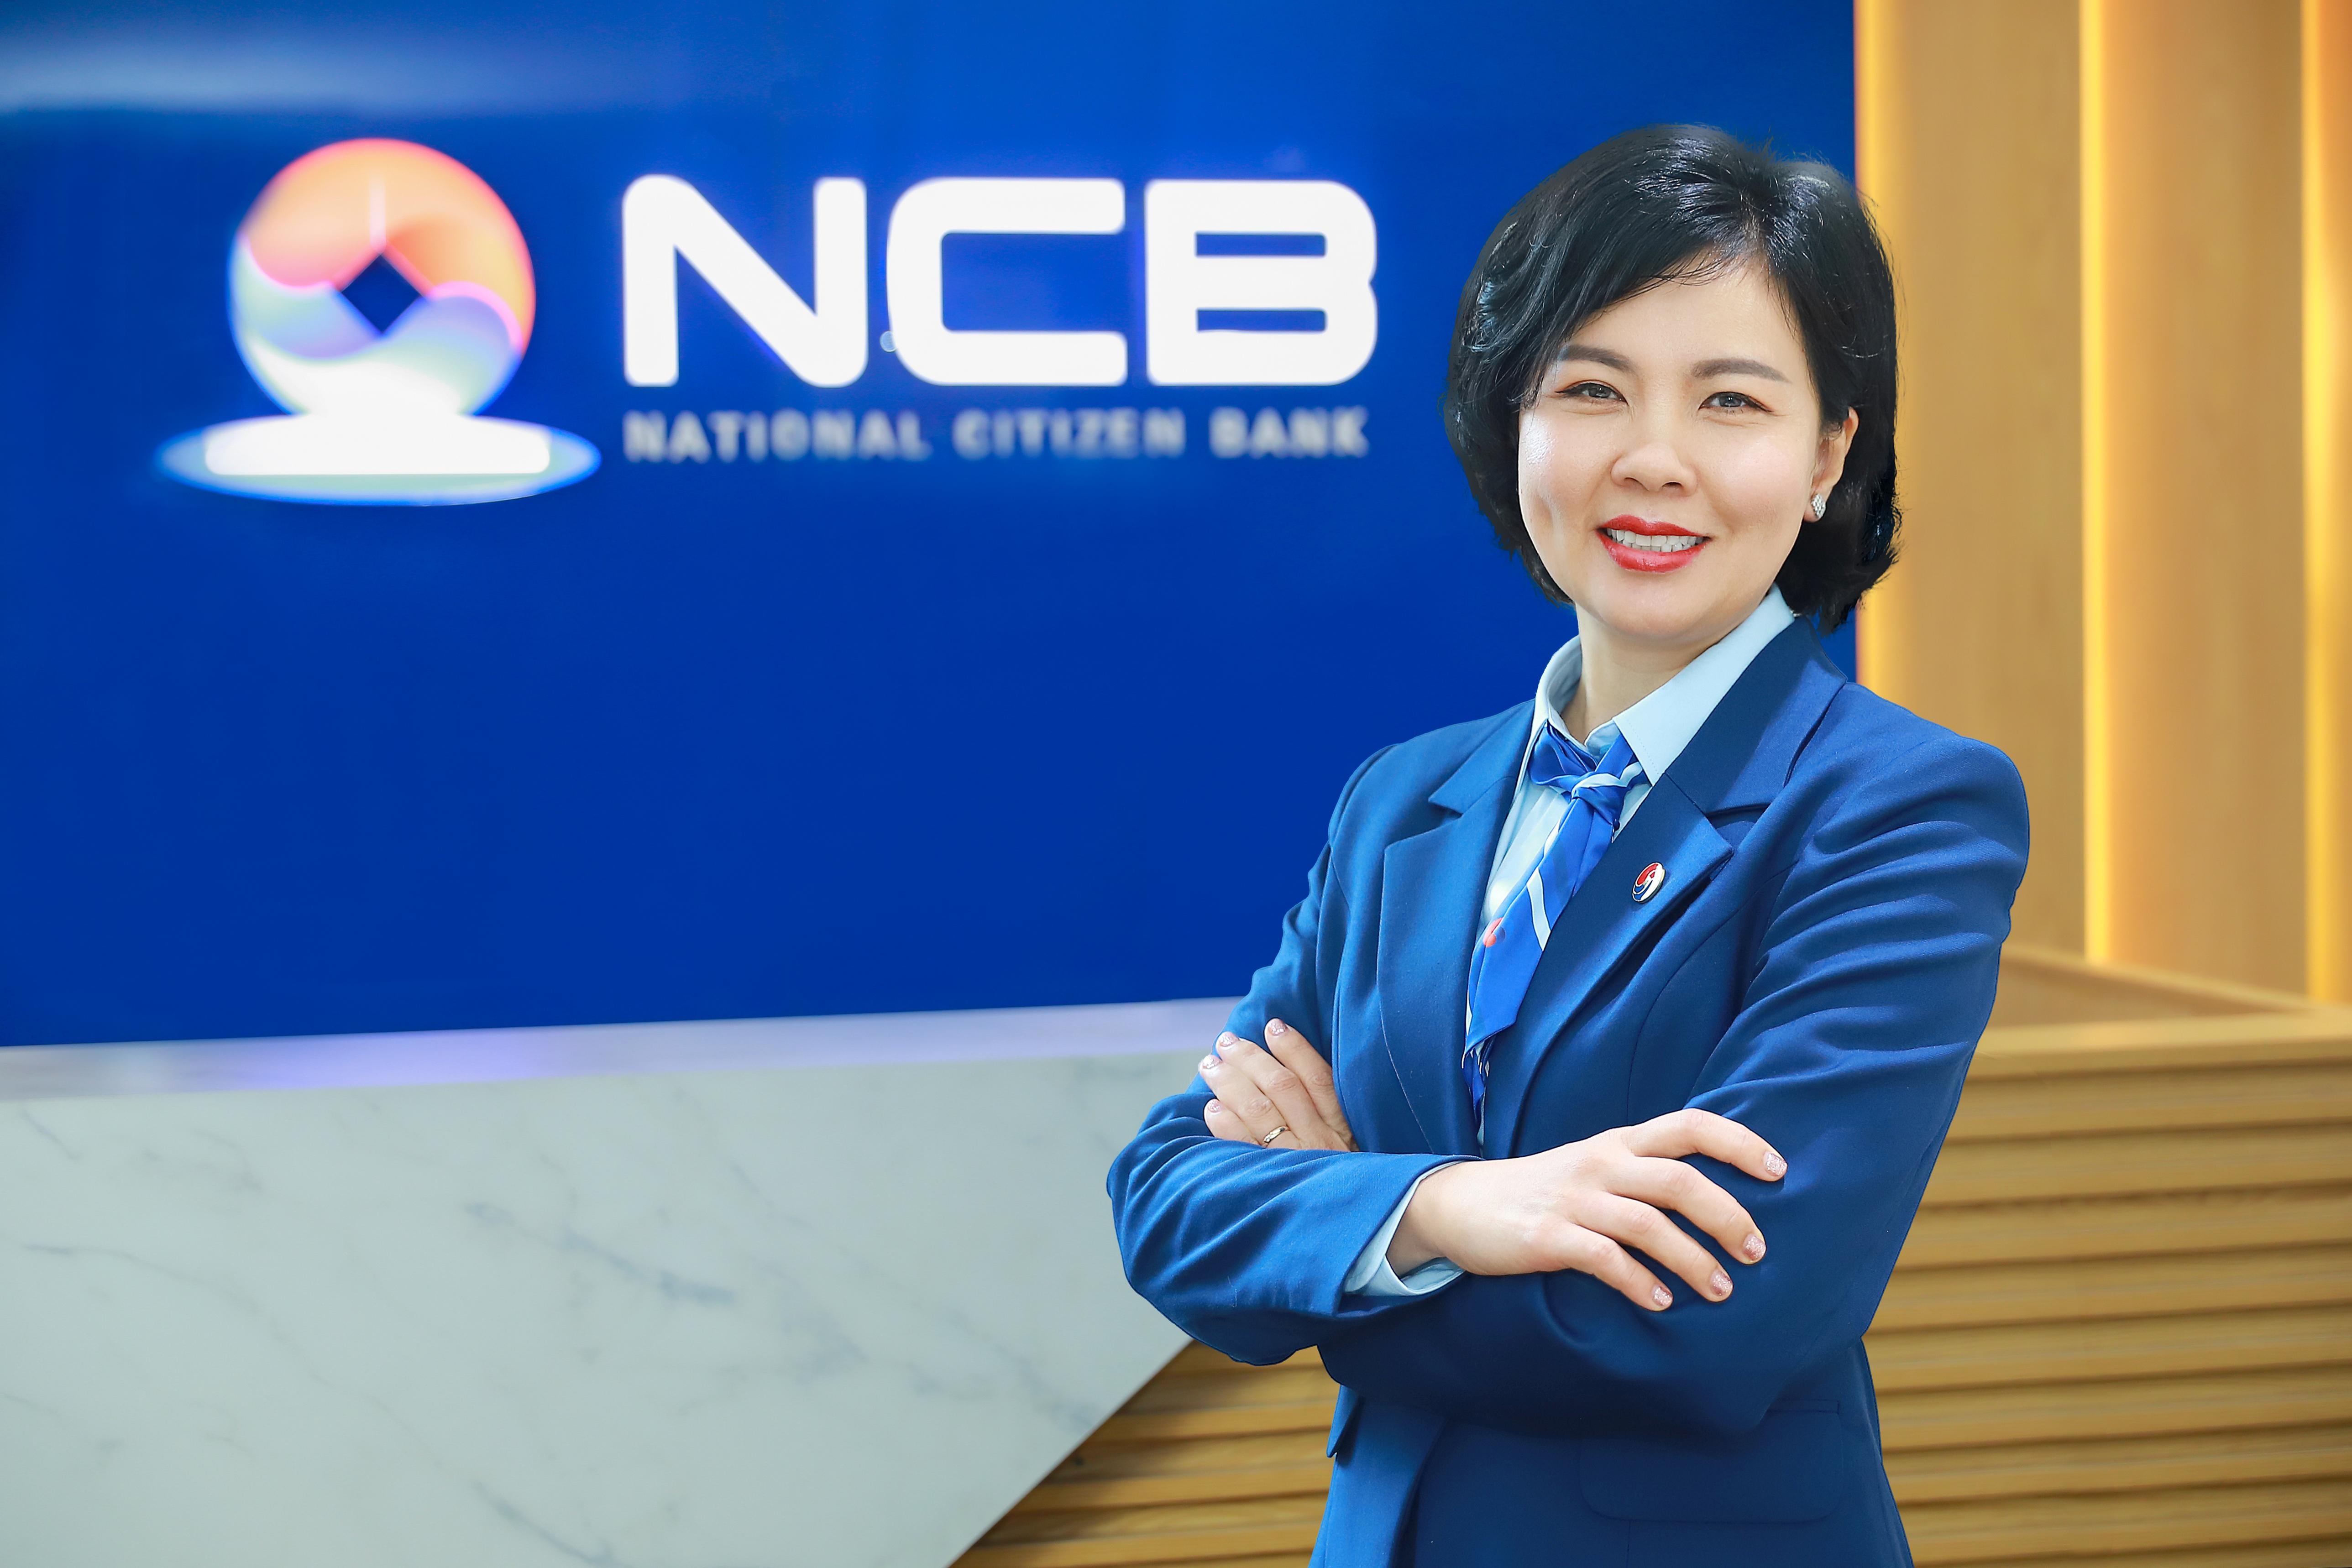 NCB bổ nhiệm Phó Tổng Giám đốc, tăng cường năng lực quản trị